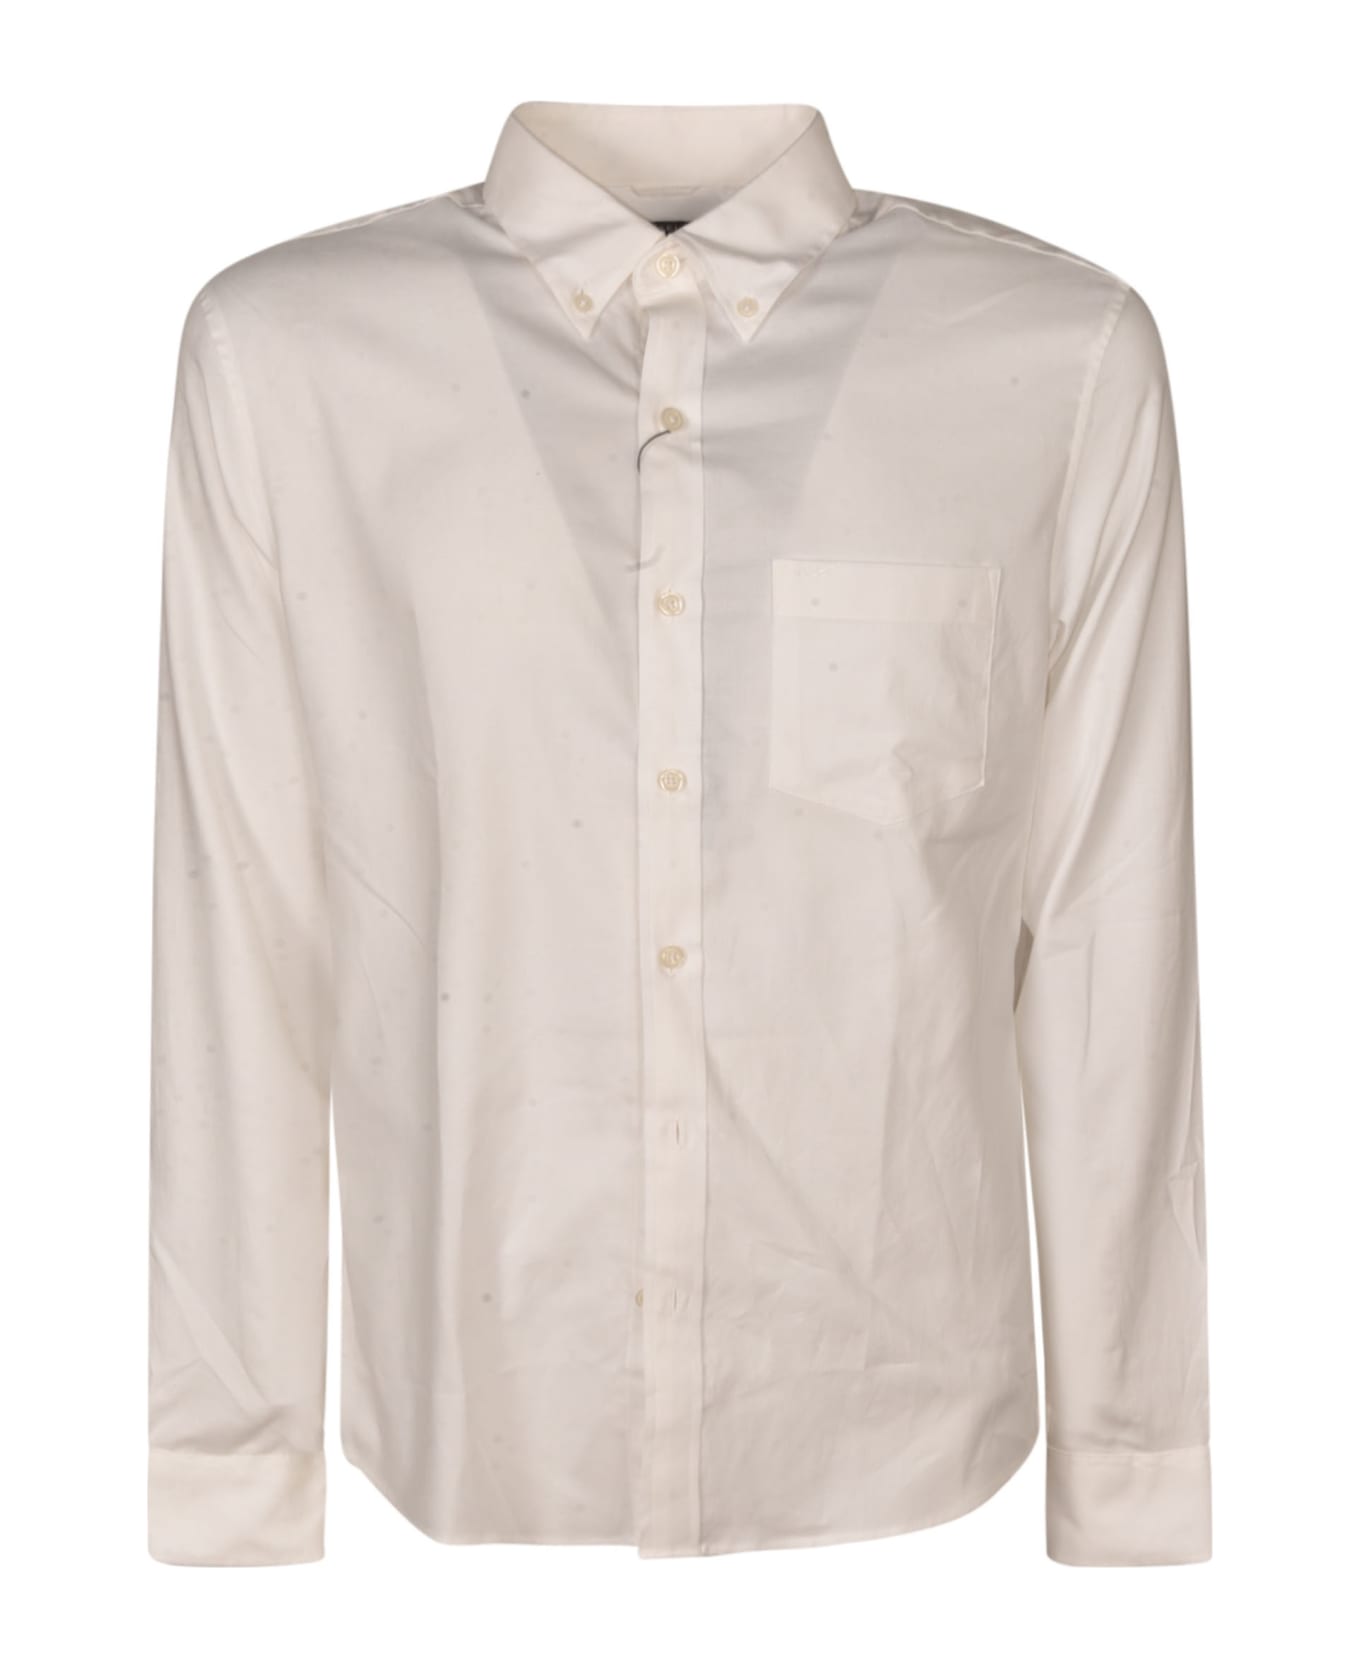 Michael Kors Regular Plain Shirt - White